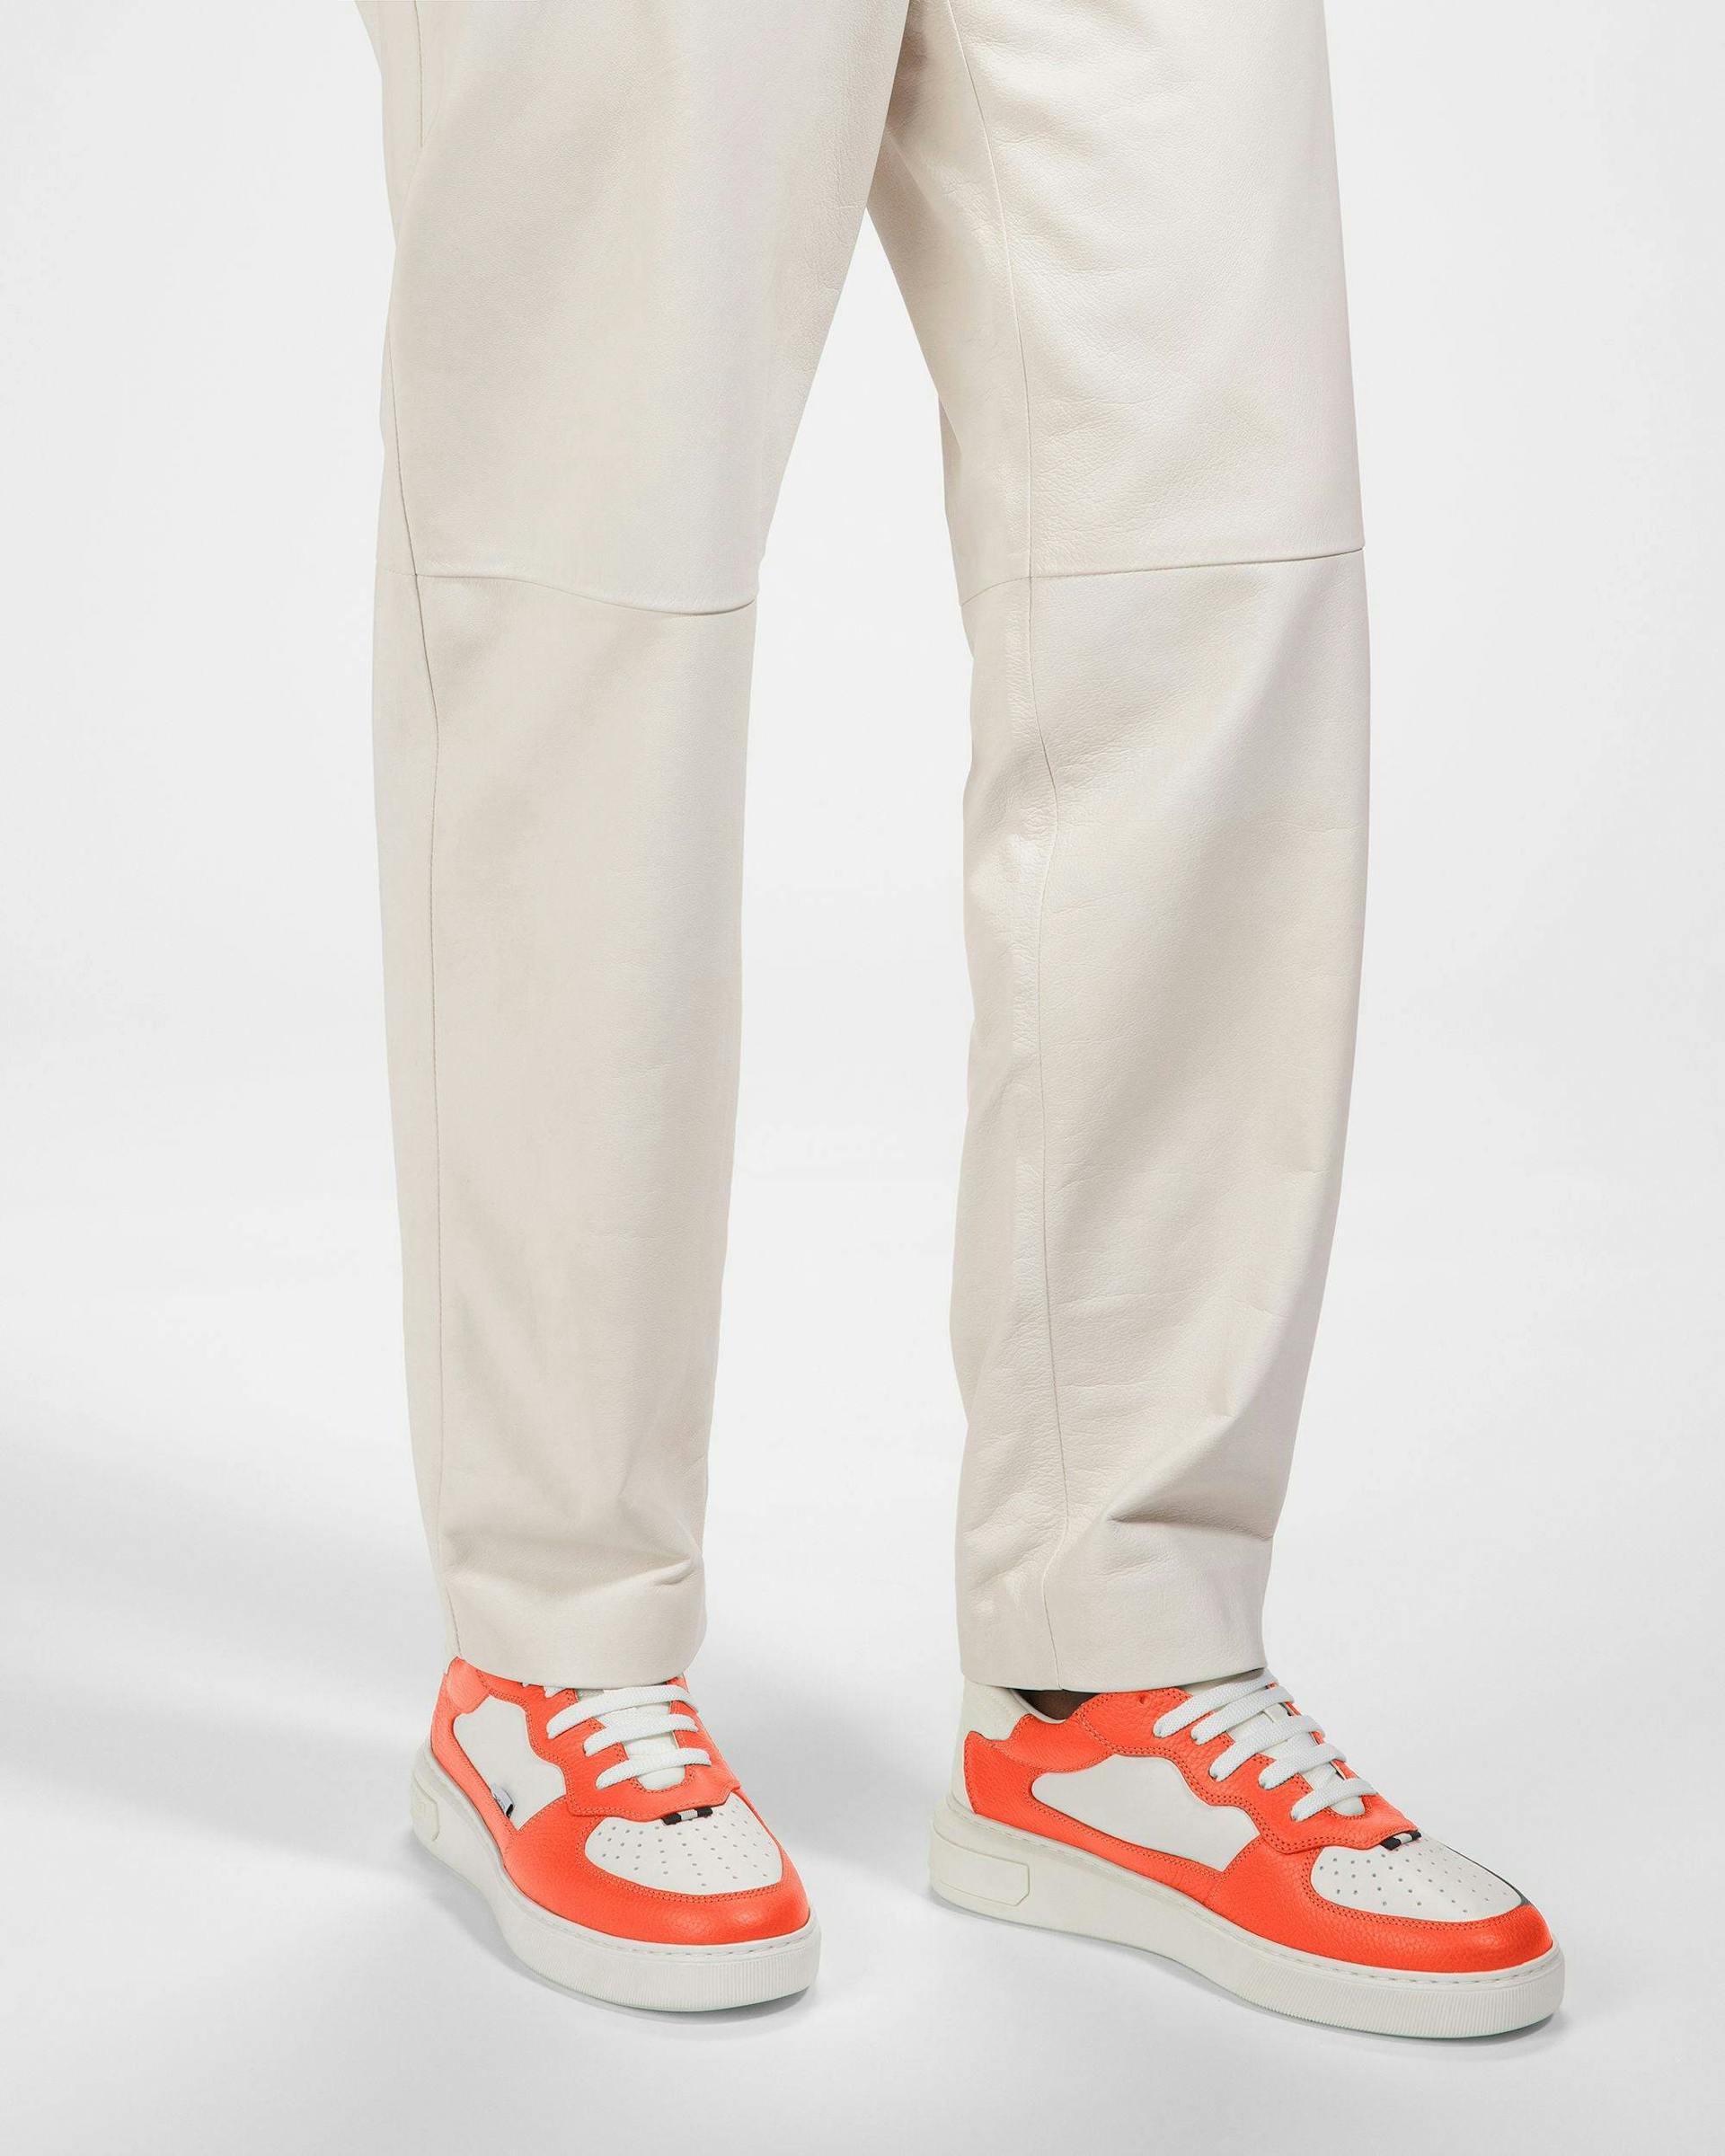 Mark Sneakers Aus Leder In Orange Und Weiß - Herren - Bally - 07